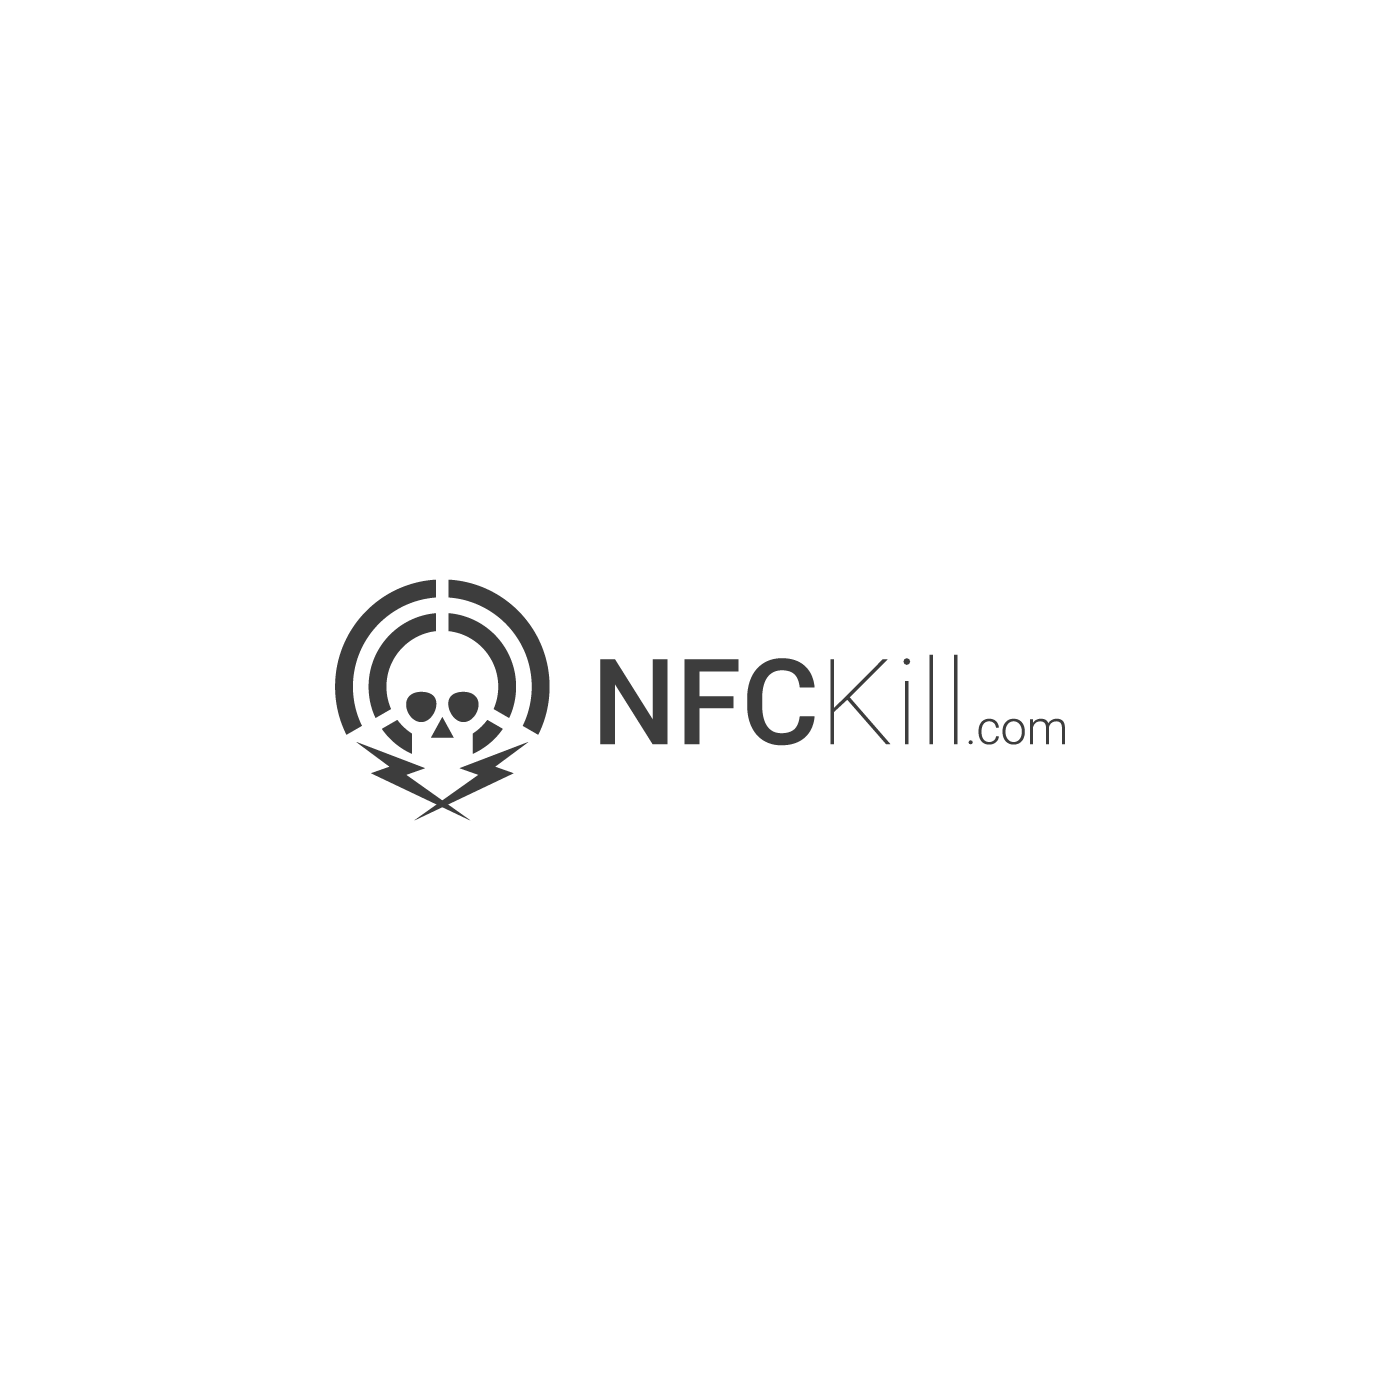 The NFCKill Logo